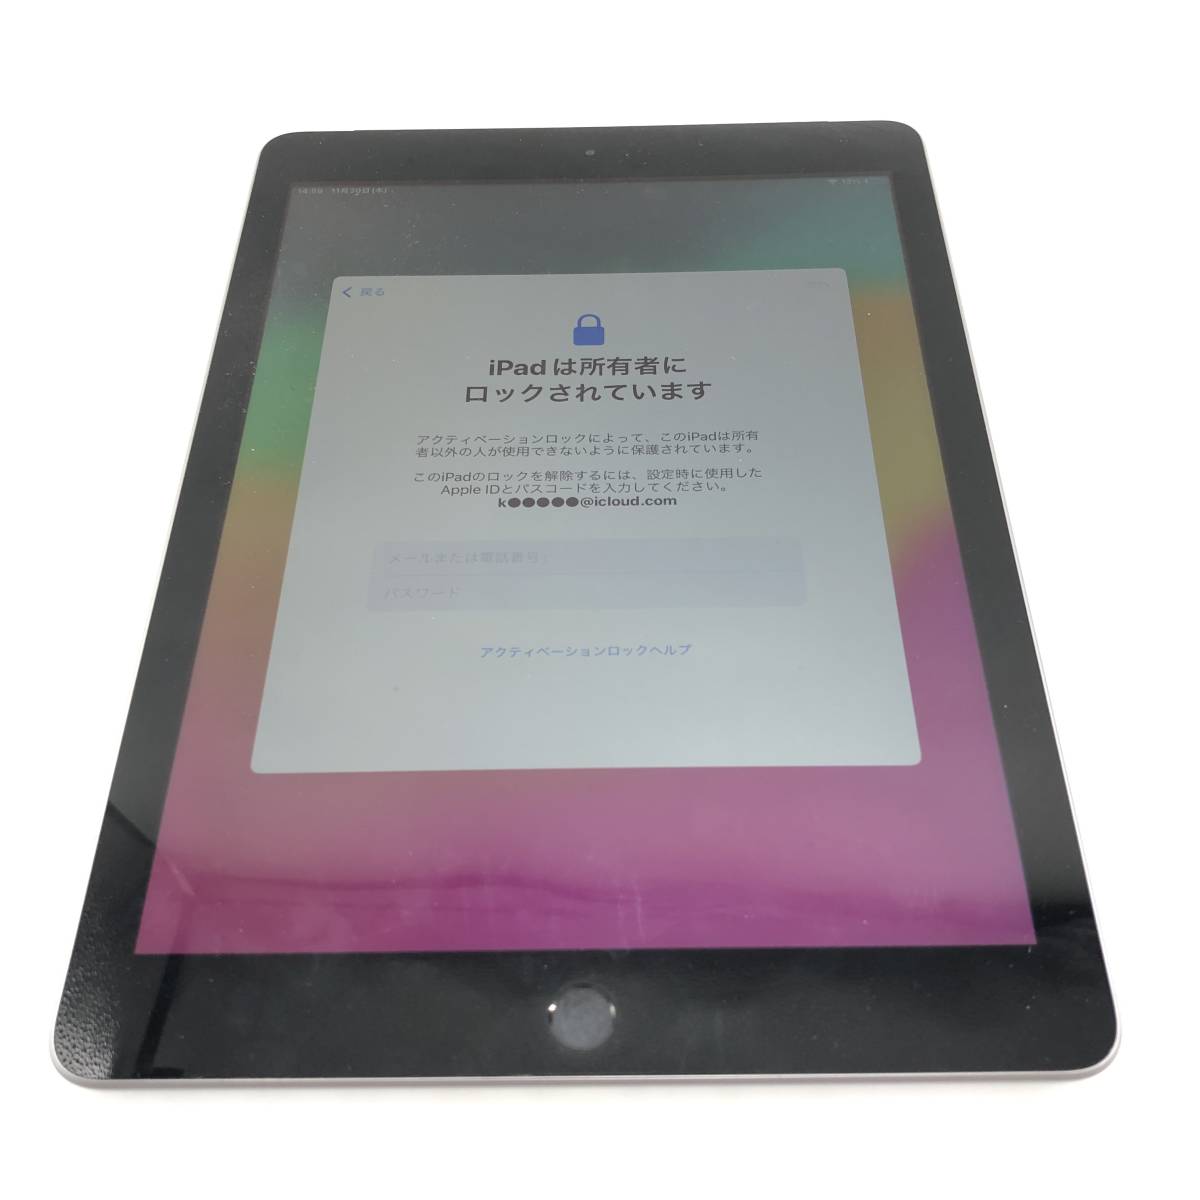 【訳あり処分品】Apple iPad (第6世代) Wi-Fi+Cellular A1954 32GB スペースグレイ 2018年 中古 タブレット パソコン ロック